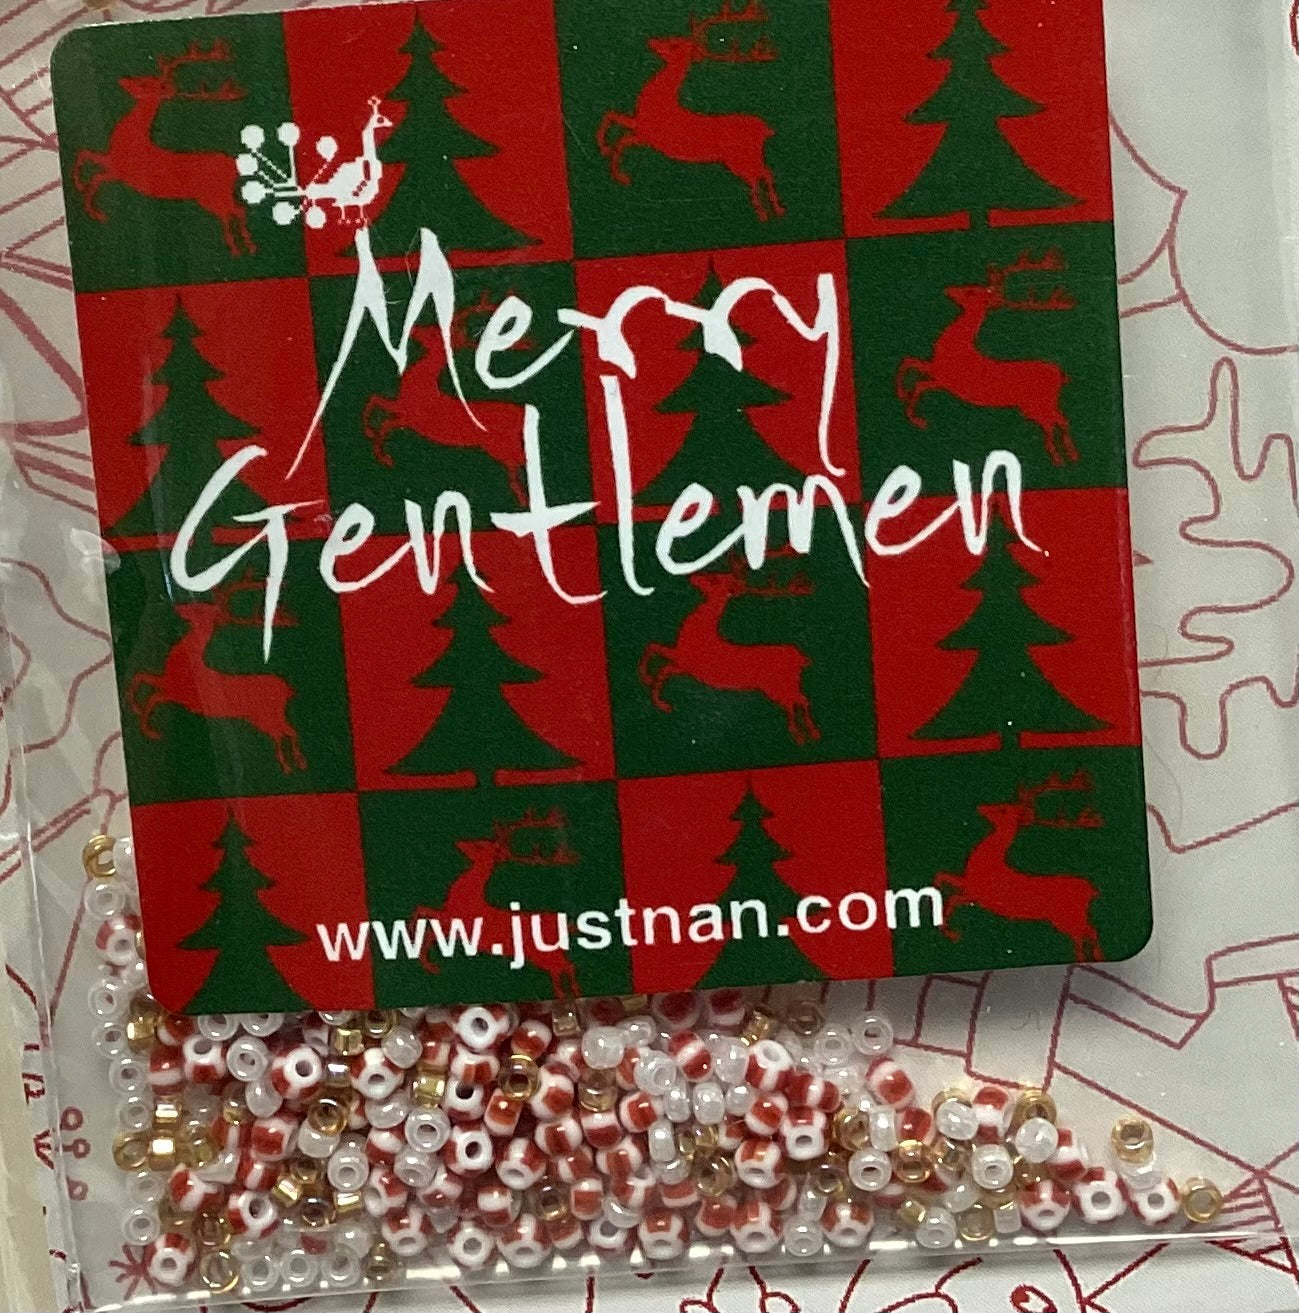 Merry Gentlemen By Just Nan